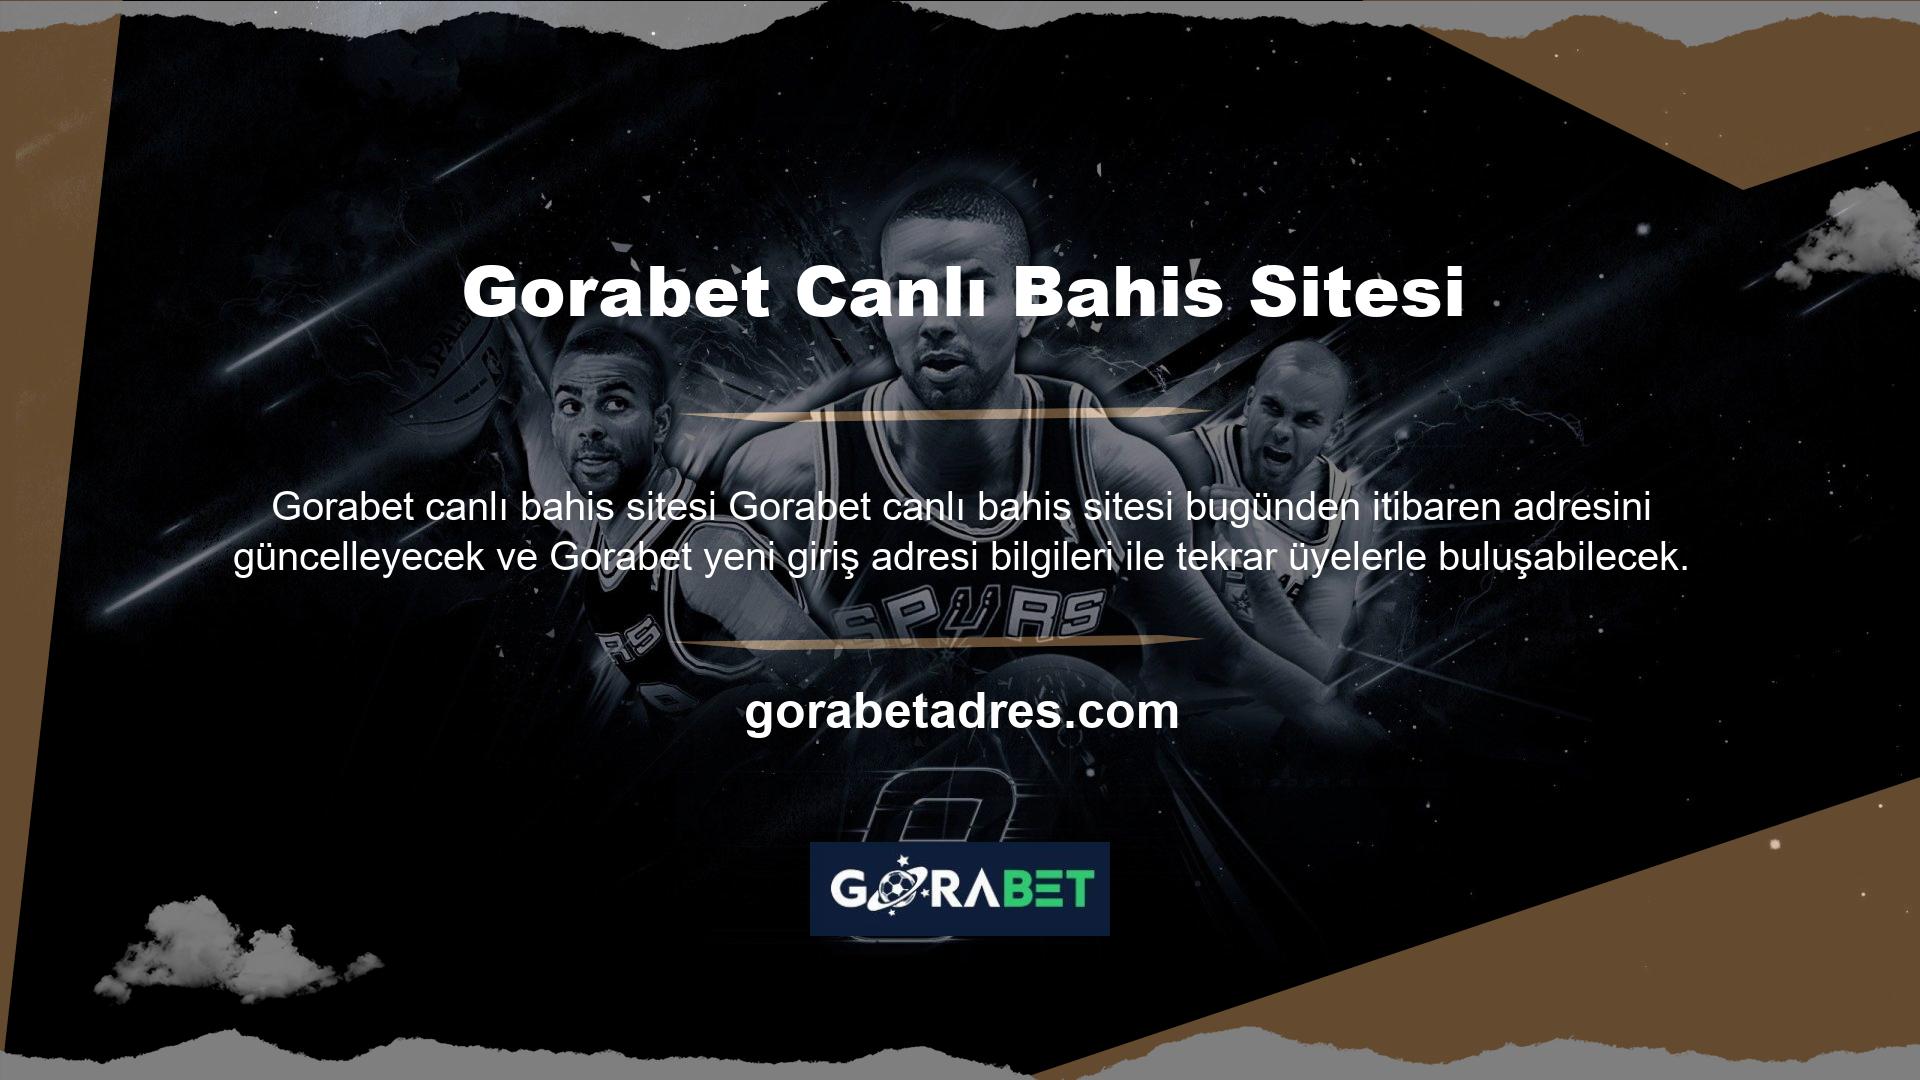 Gece kapanan Gorabet adreslerinin aksine Gorabet adresleri hakkında webmasterlar tarafından yayınlanan tüm bilgiler sitemizde mevcuttur